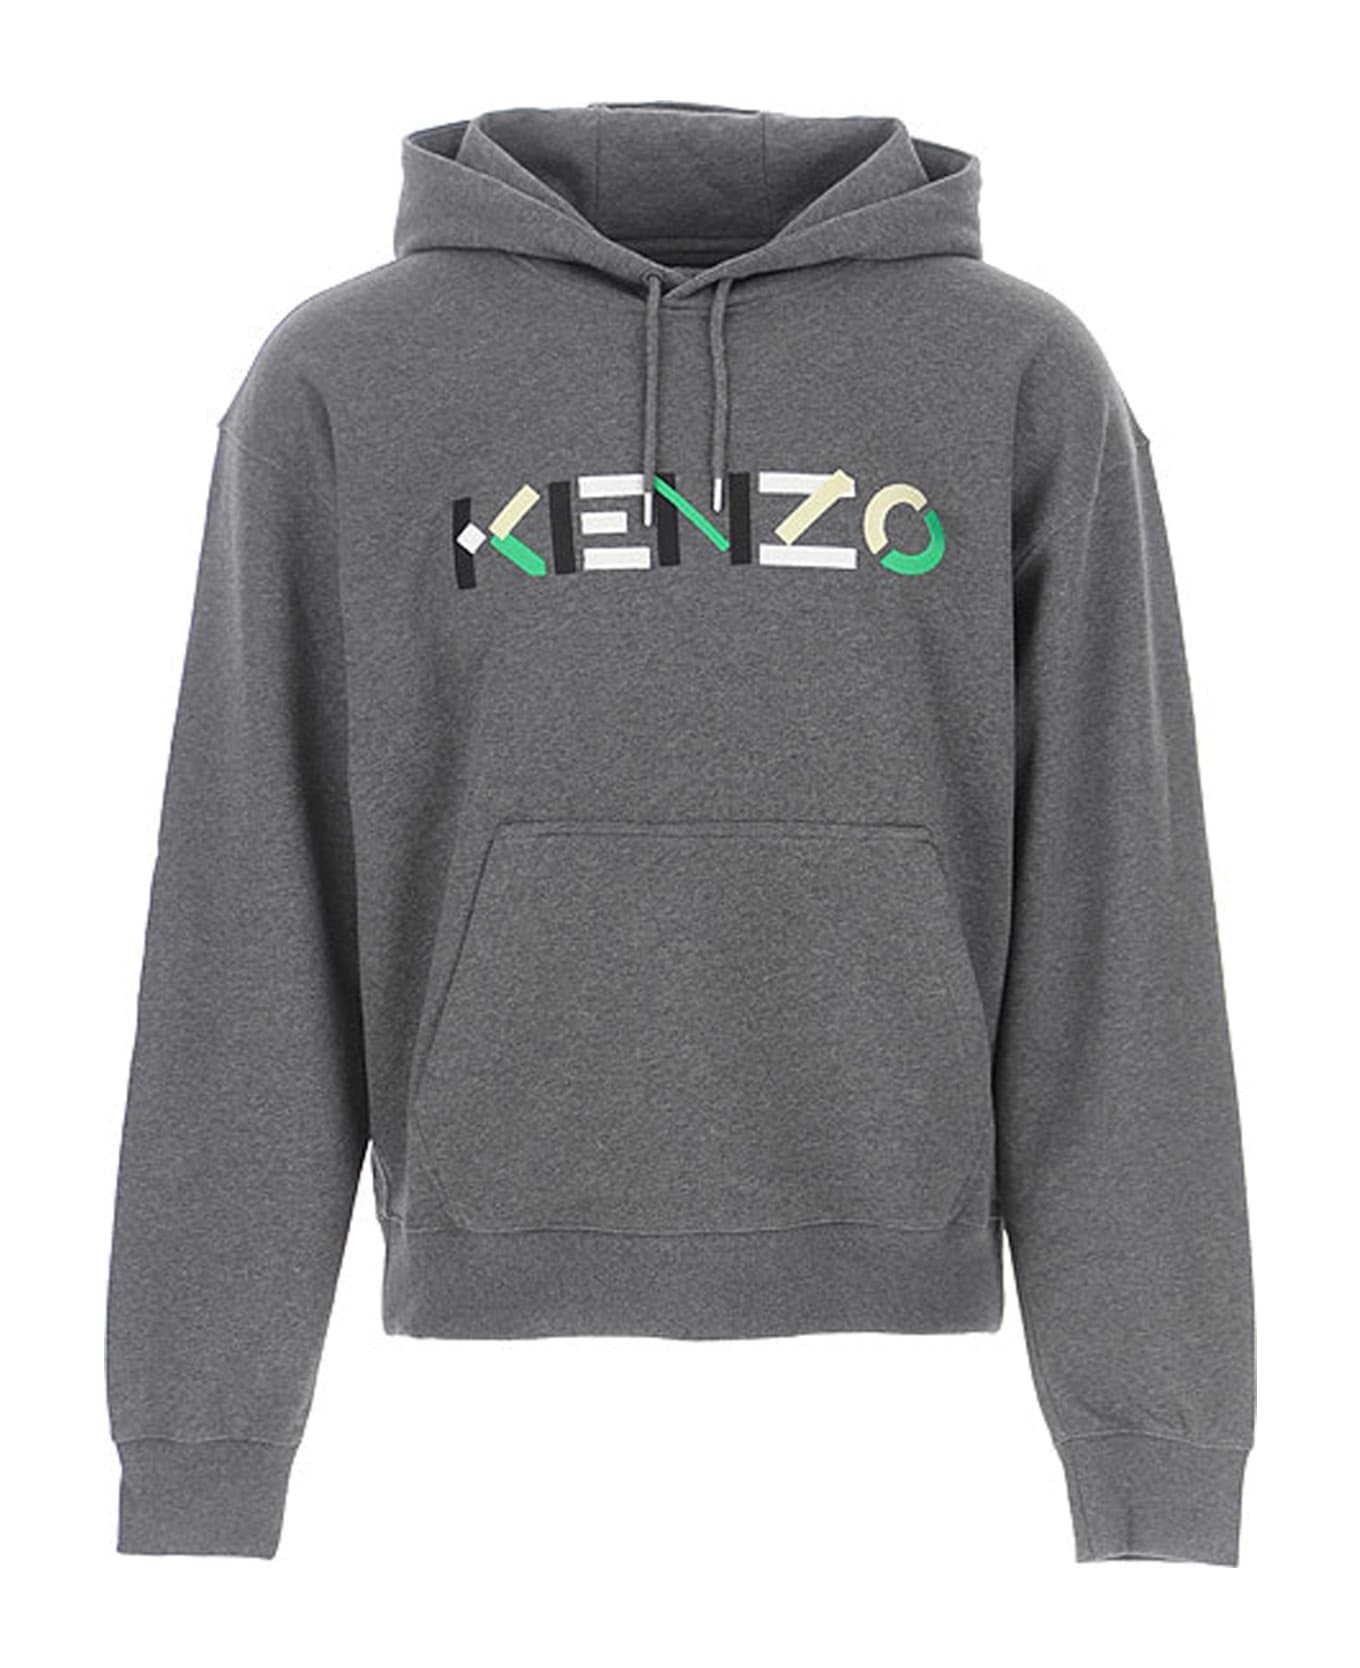 Kenzo Logo Hooded Sweatshirt - Gray